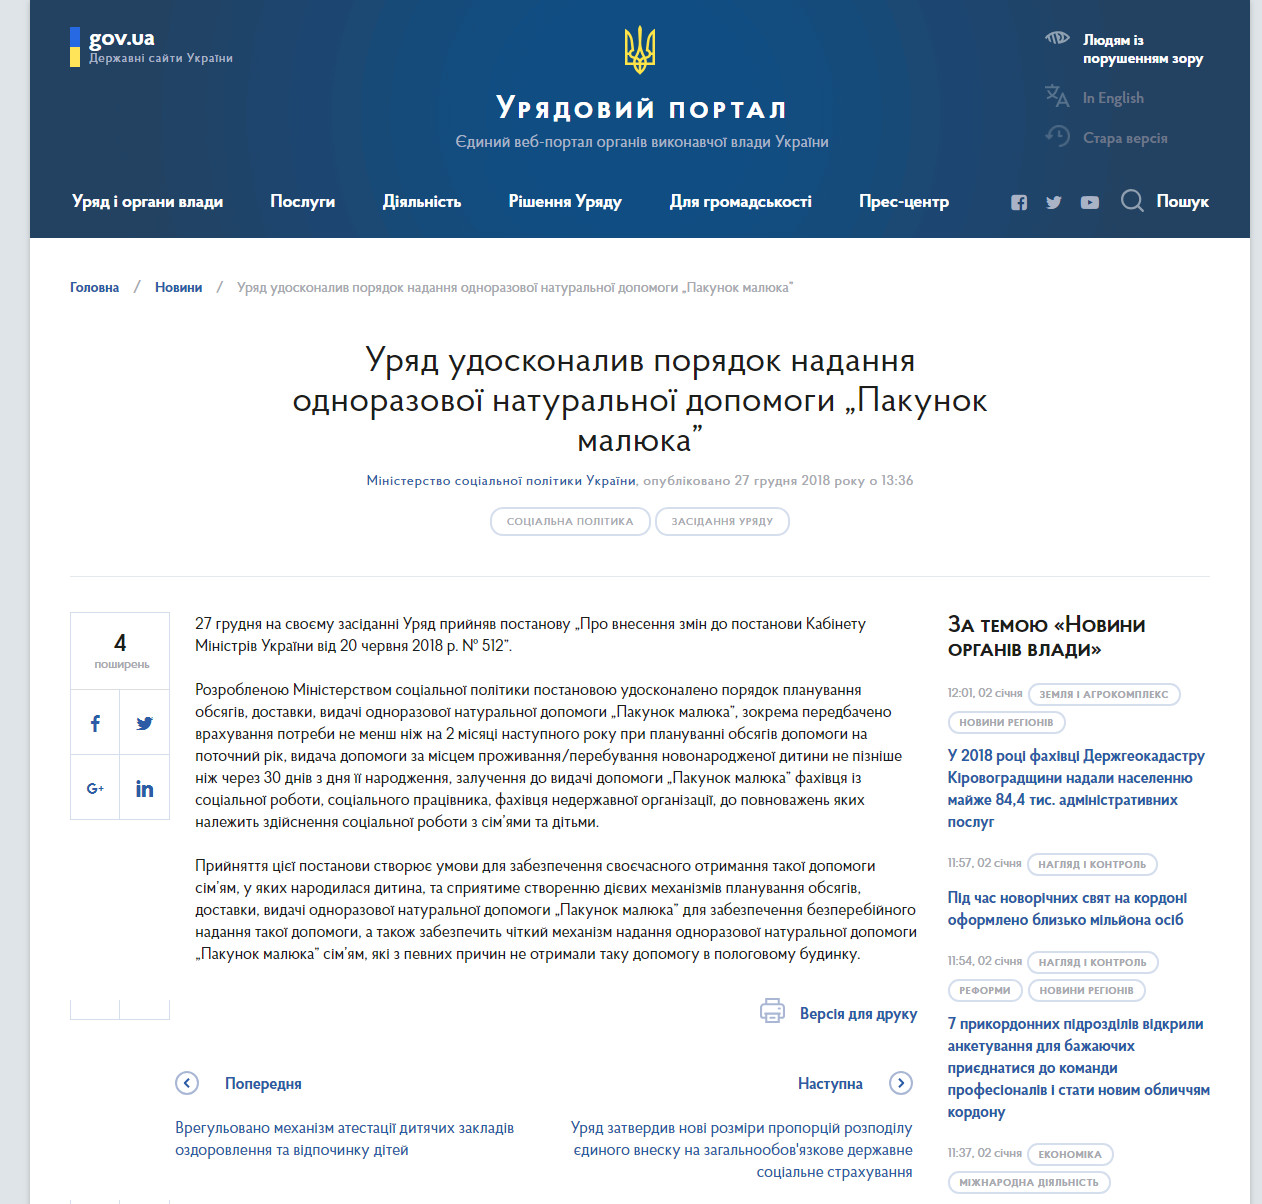 https://www.kmu.gov.ua/ua/news/uryad-udoskonaliv-poryadok-nadannya-odnorazovoyi-naturalnoyi-dopomogi-pakunok-malyuka